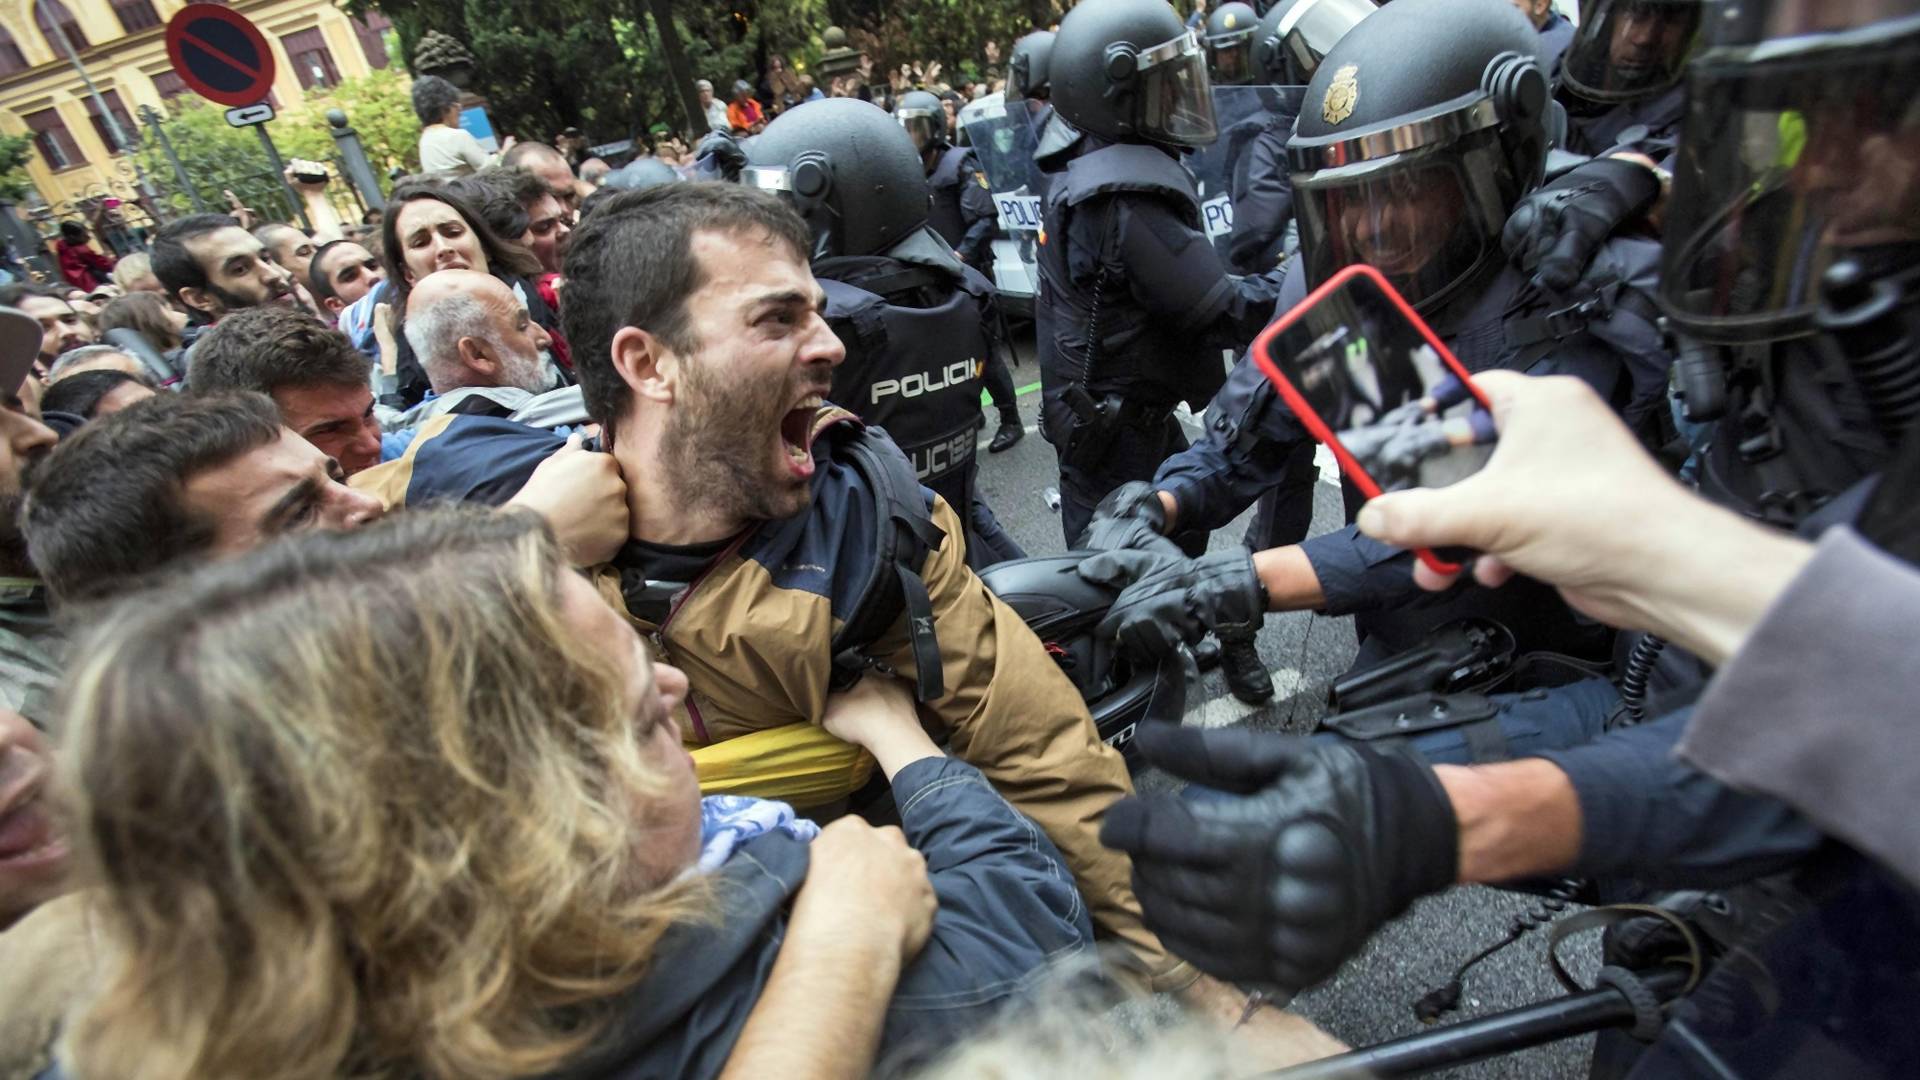 "Patrz, to mojego ojca ciągną po ziemi, a wujkowi złamali nos!". Polak o walczącej o niepodległość Katalonii